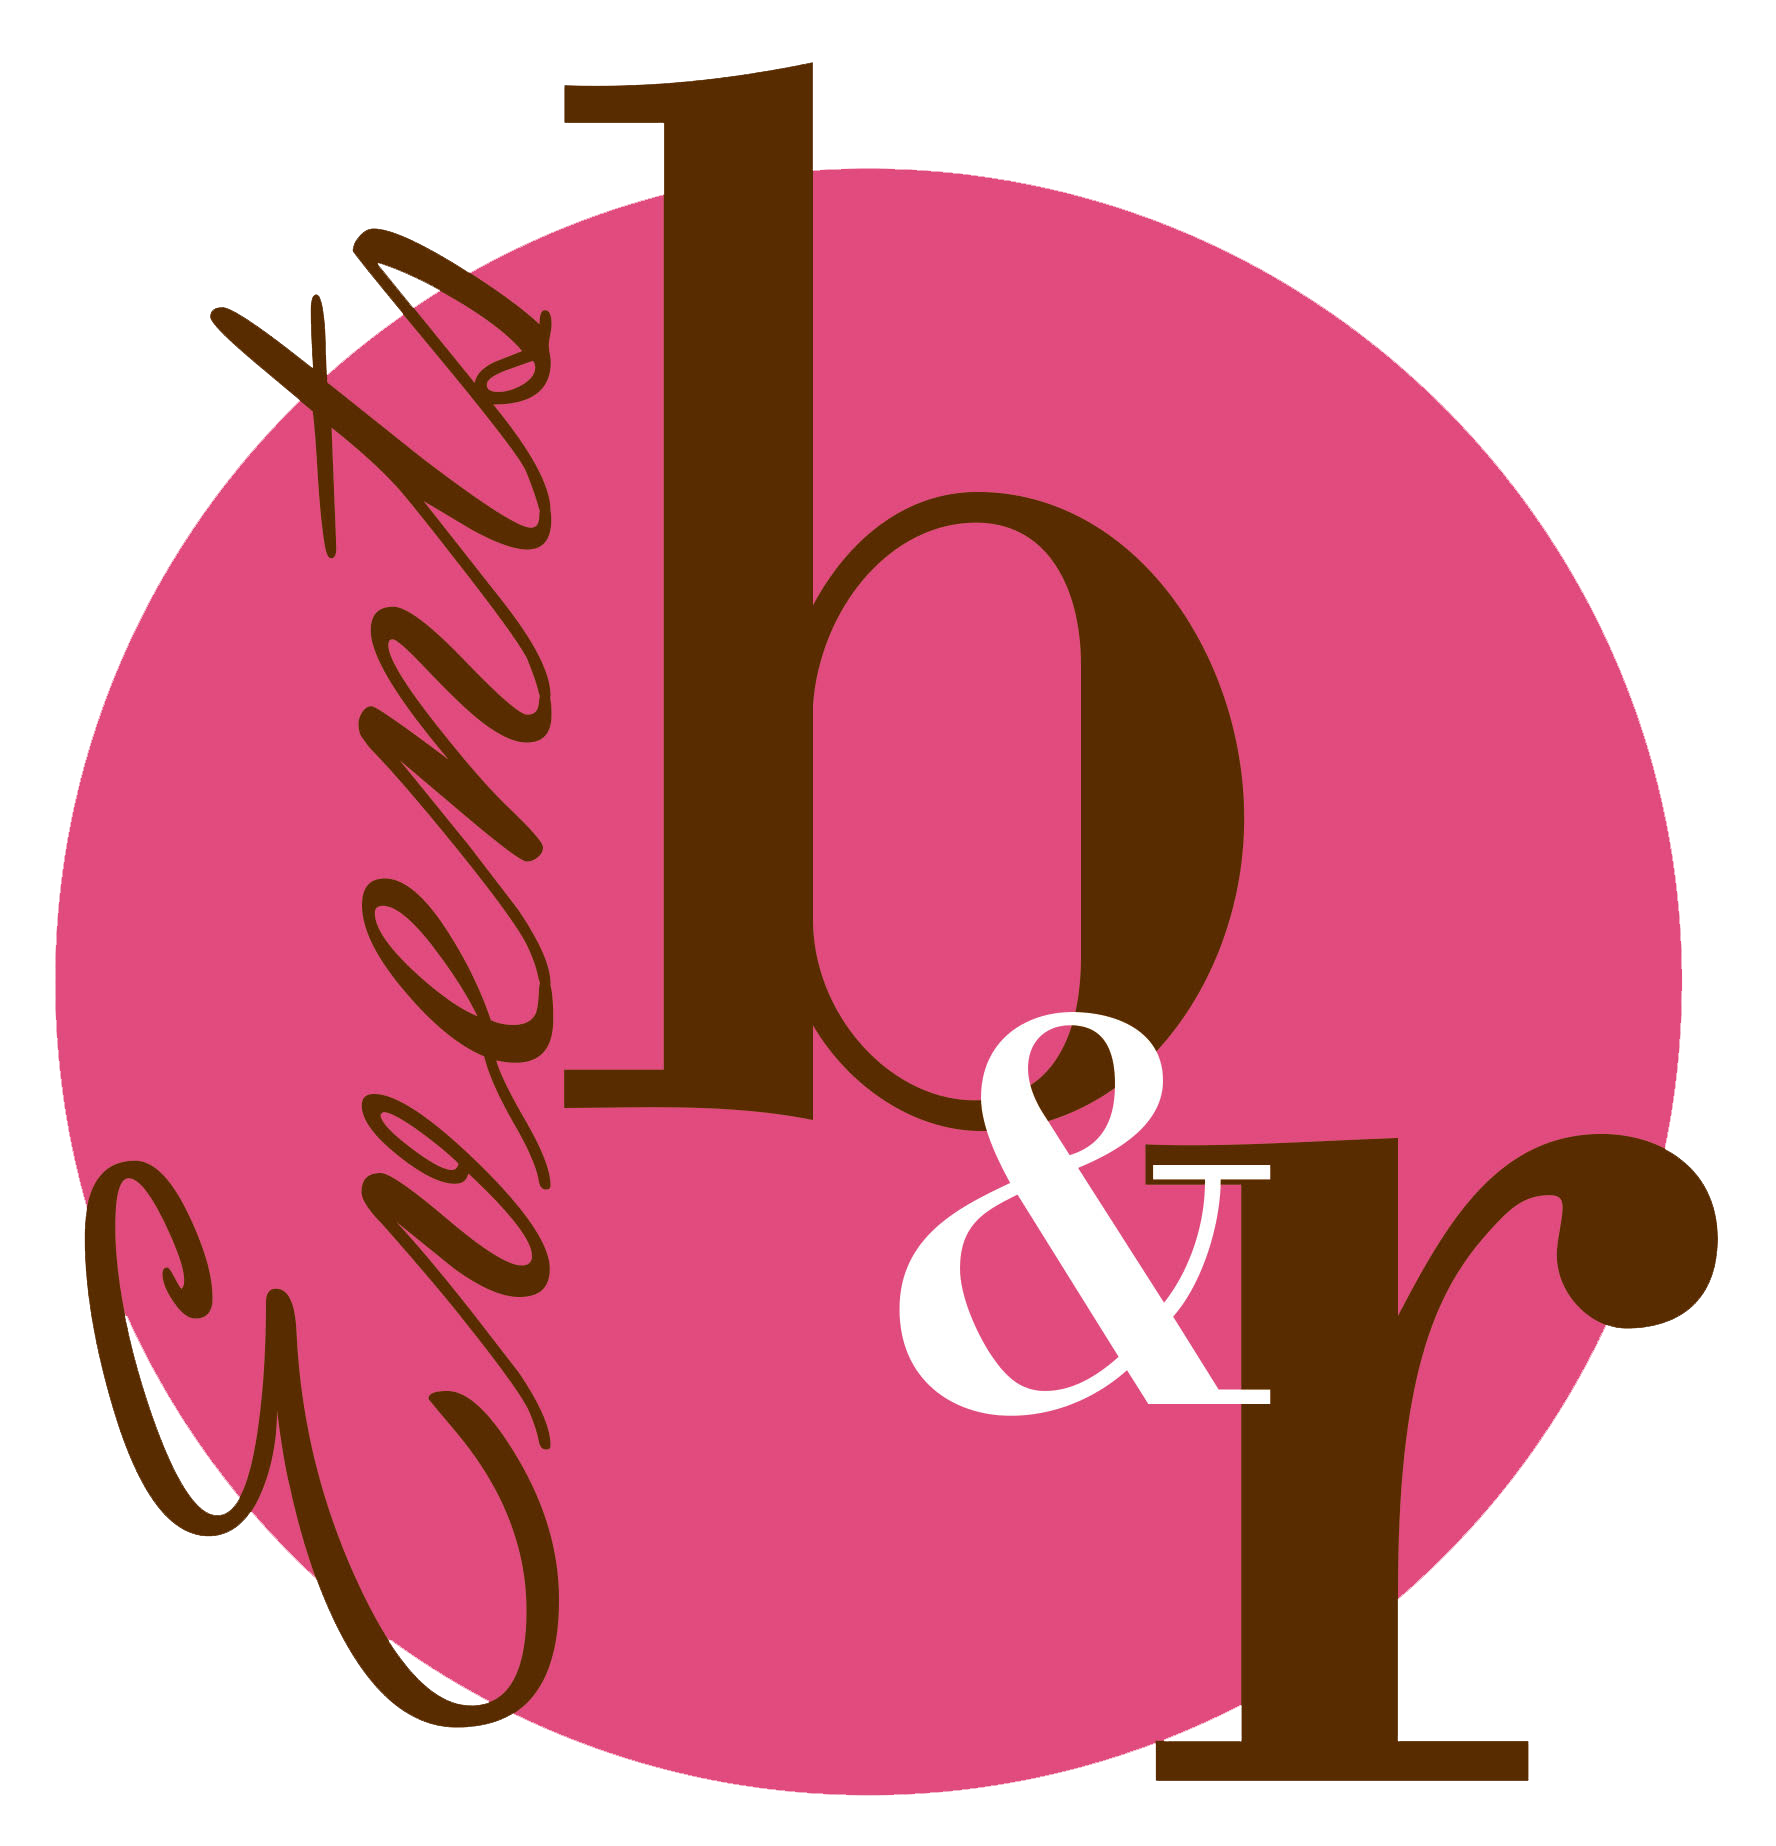 BR_Logo.png